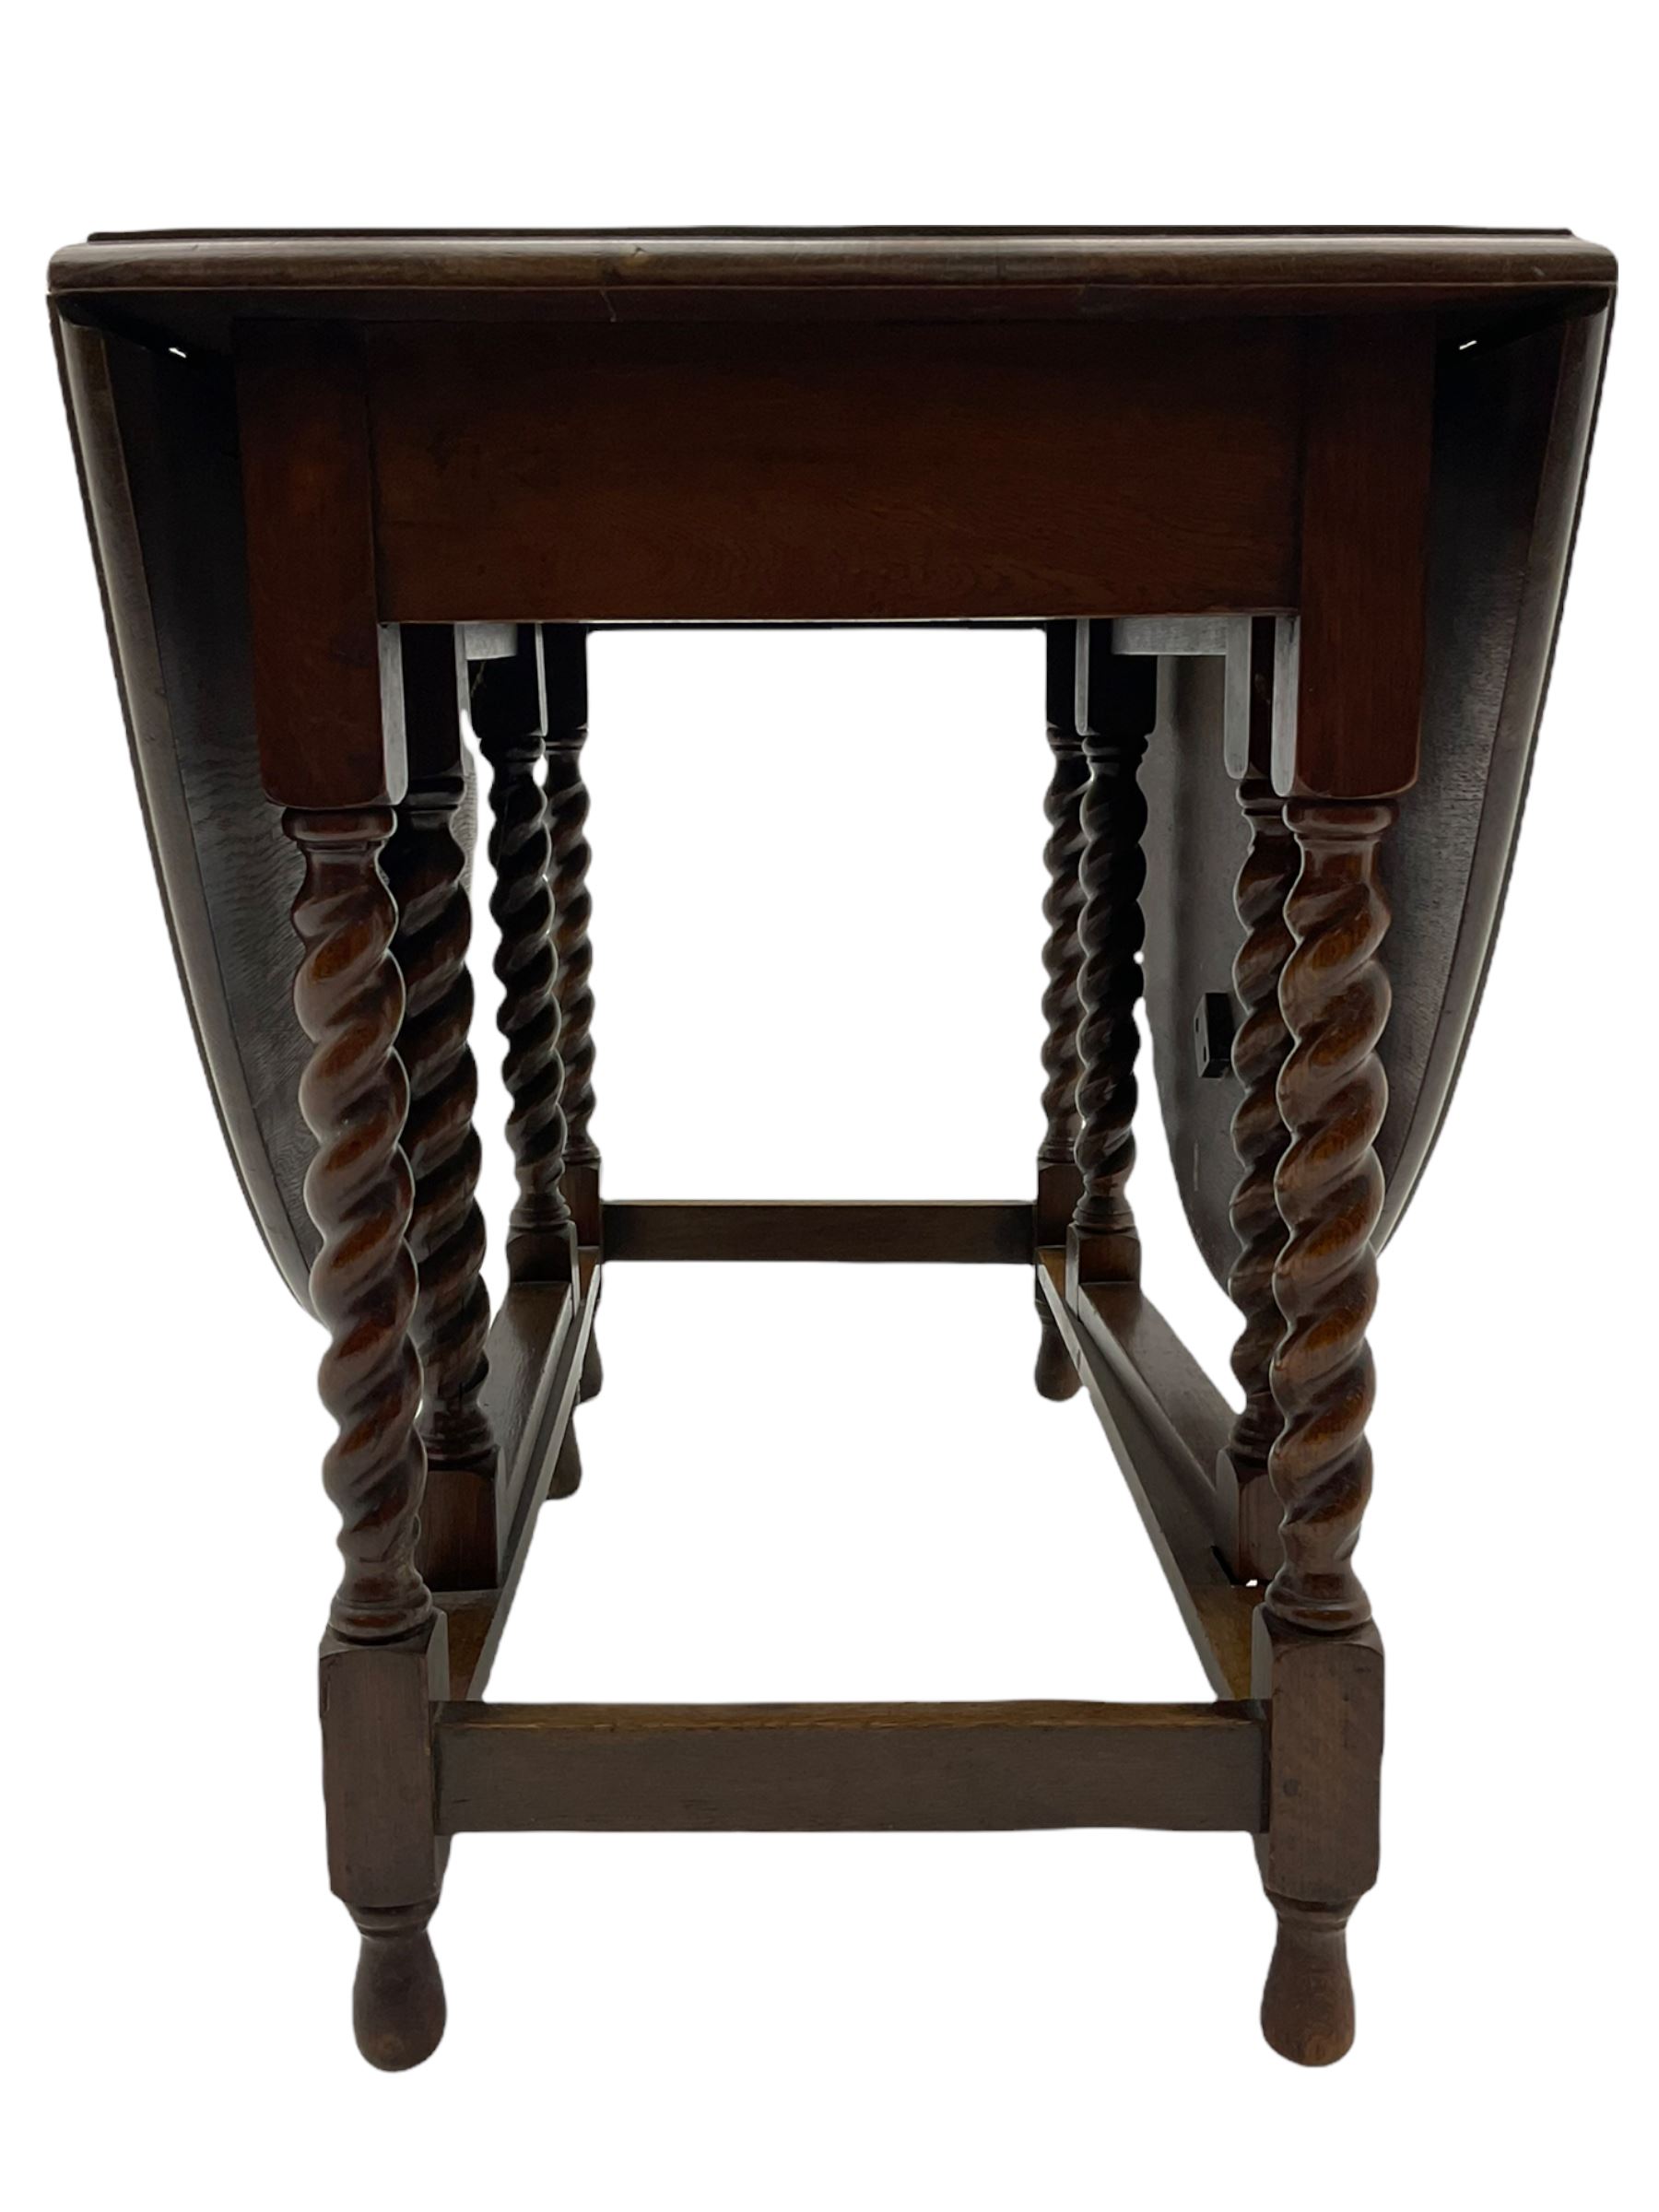 Early 20th century oak barley twist drop leaf dining table (105cm x 154cm - Image 2 of 24